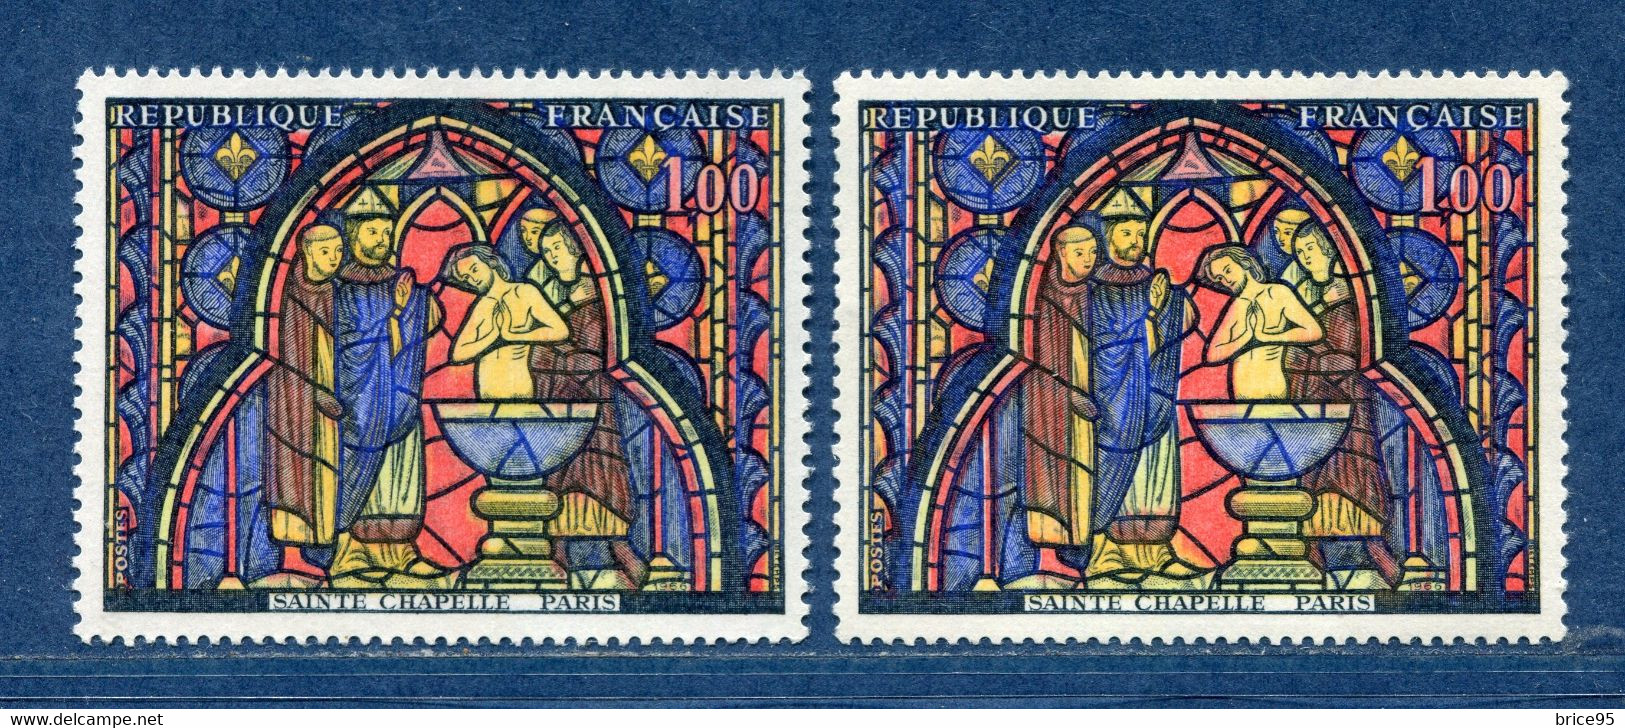 ⭐ France - Variété - YT N° 1492 - Couleurs - Pétouilles - Neuf Sans Charnière - 1966 ⭐ - Unused Stamps